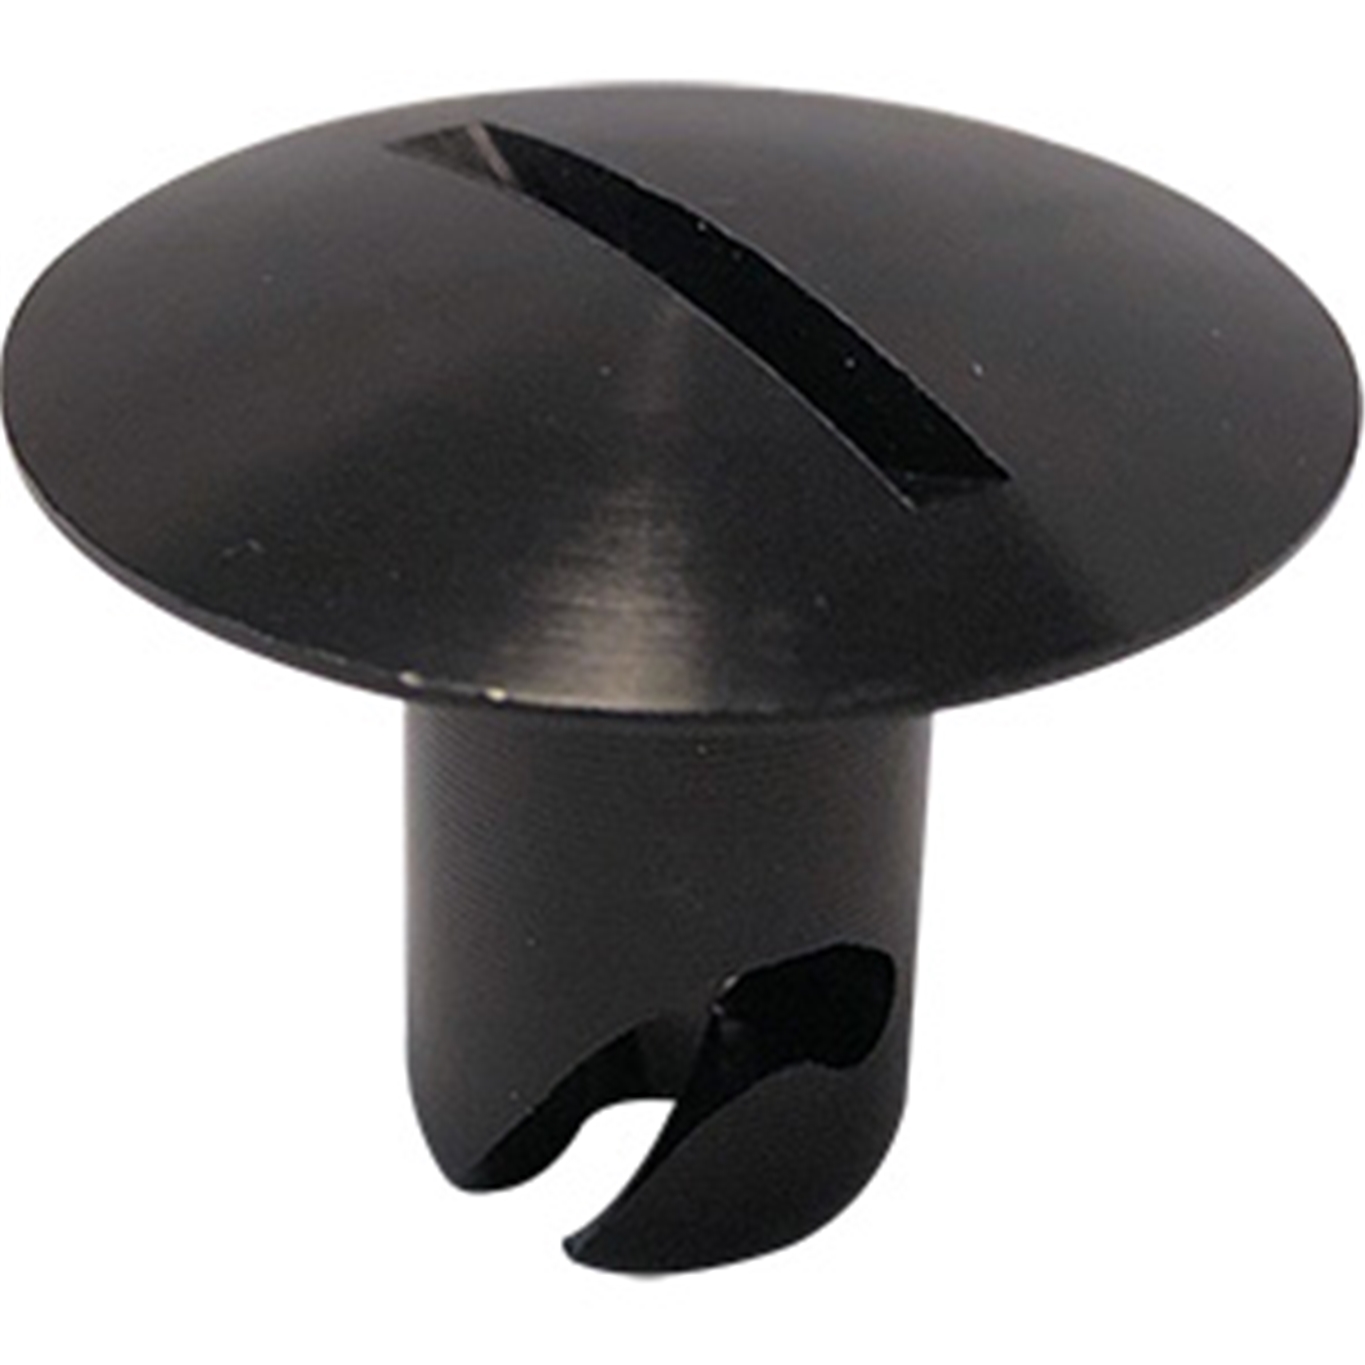 Panelfast Black Big Oval Head Aluminum 7/16".450 Grip